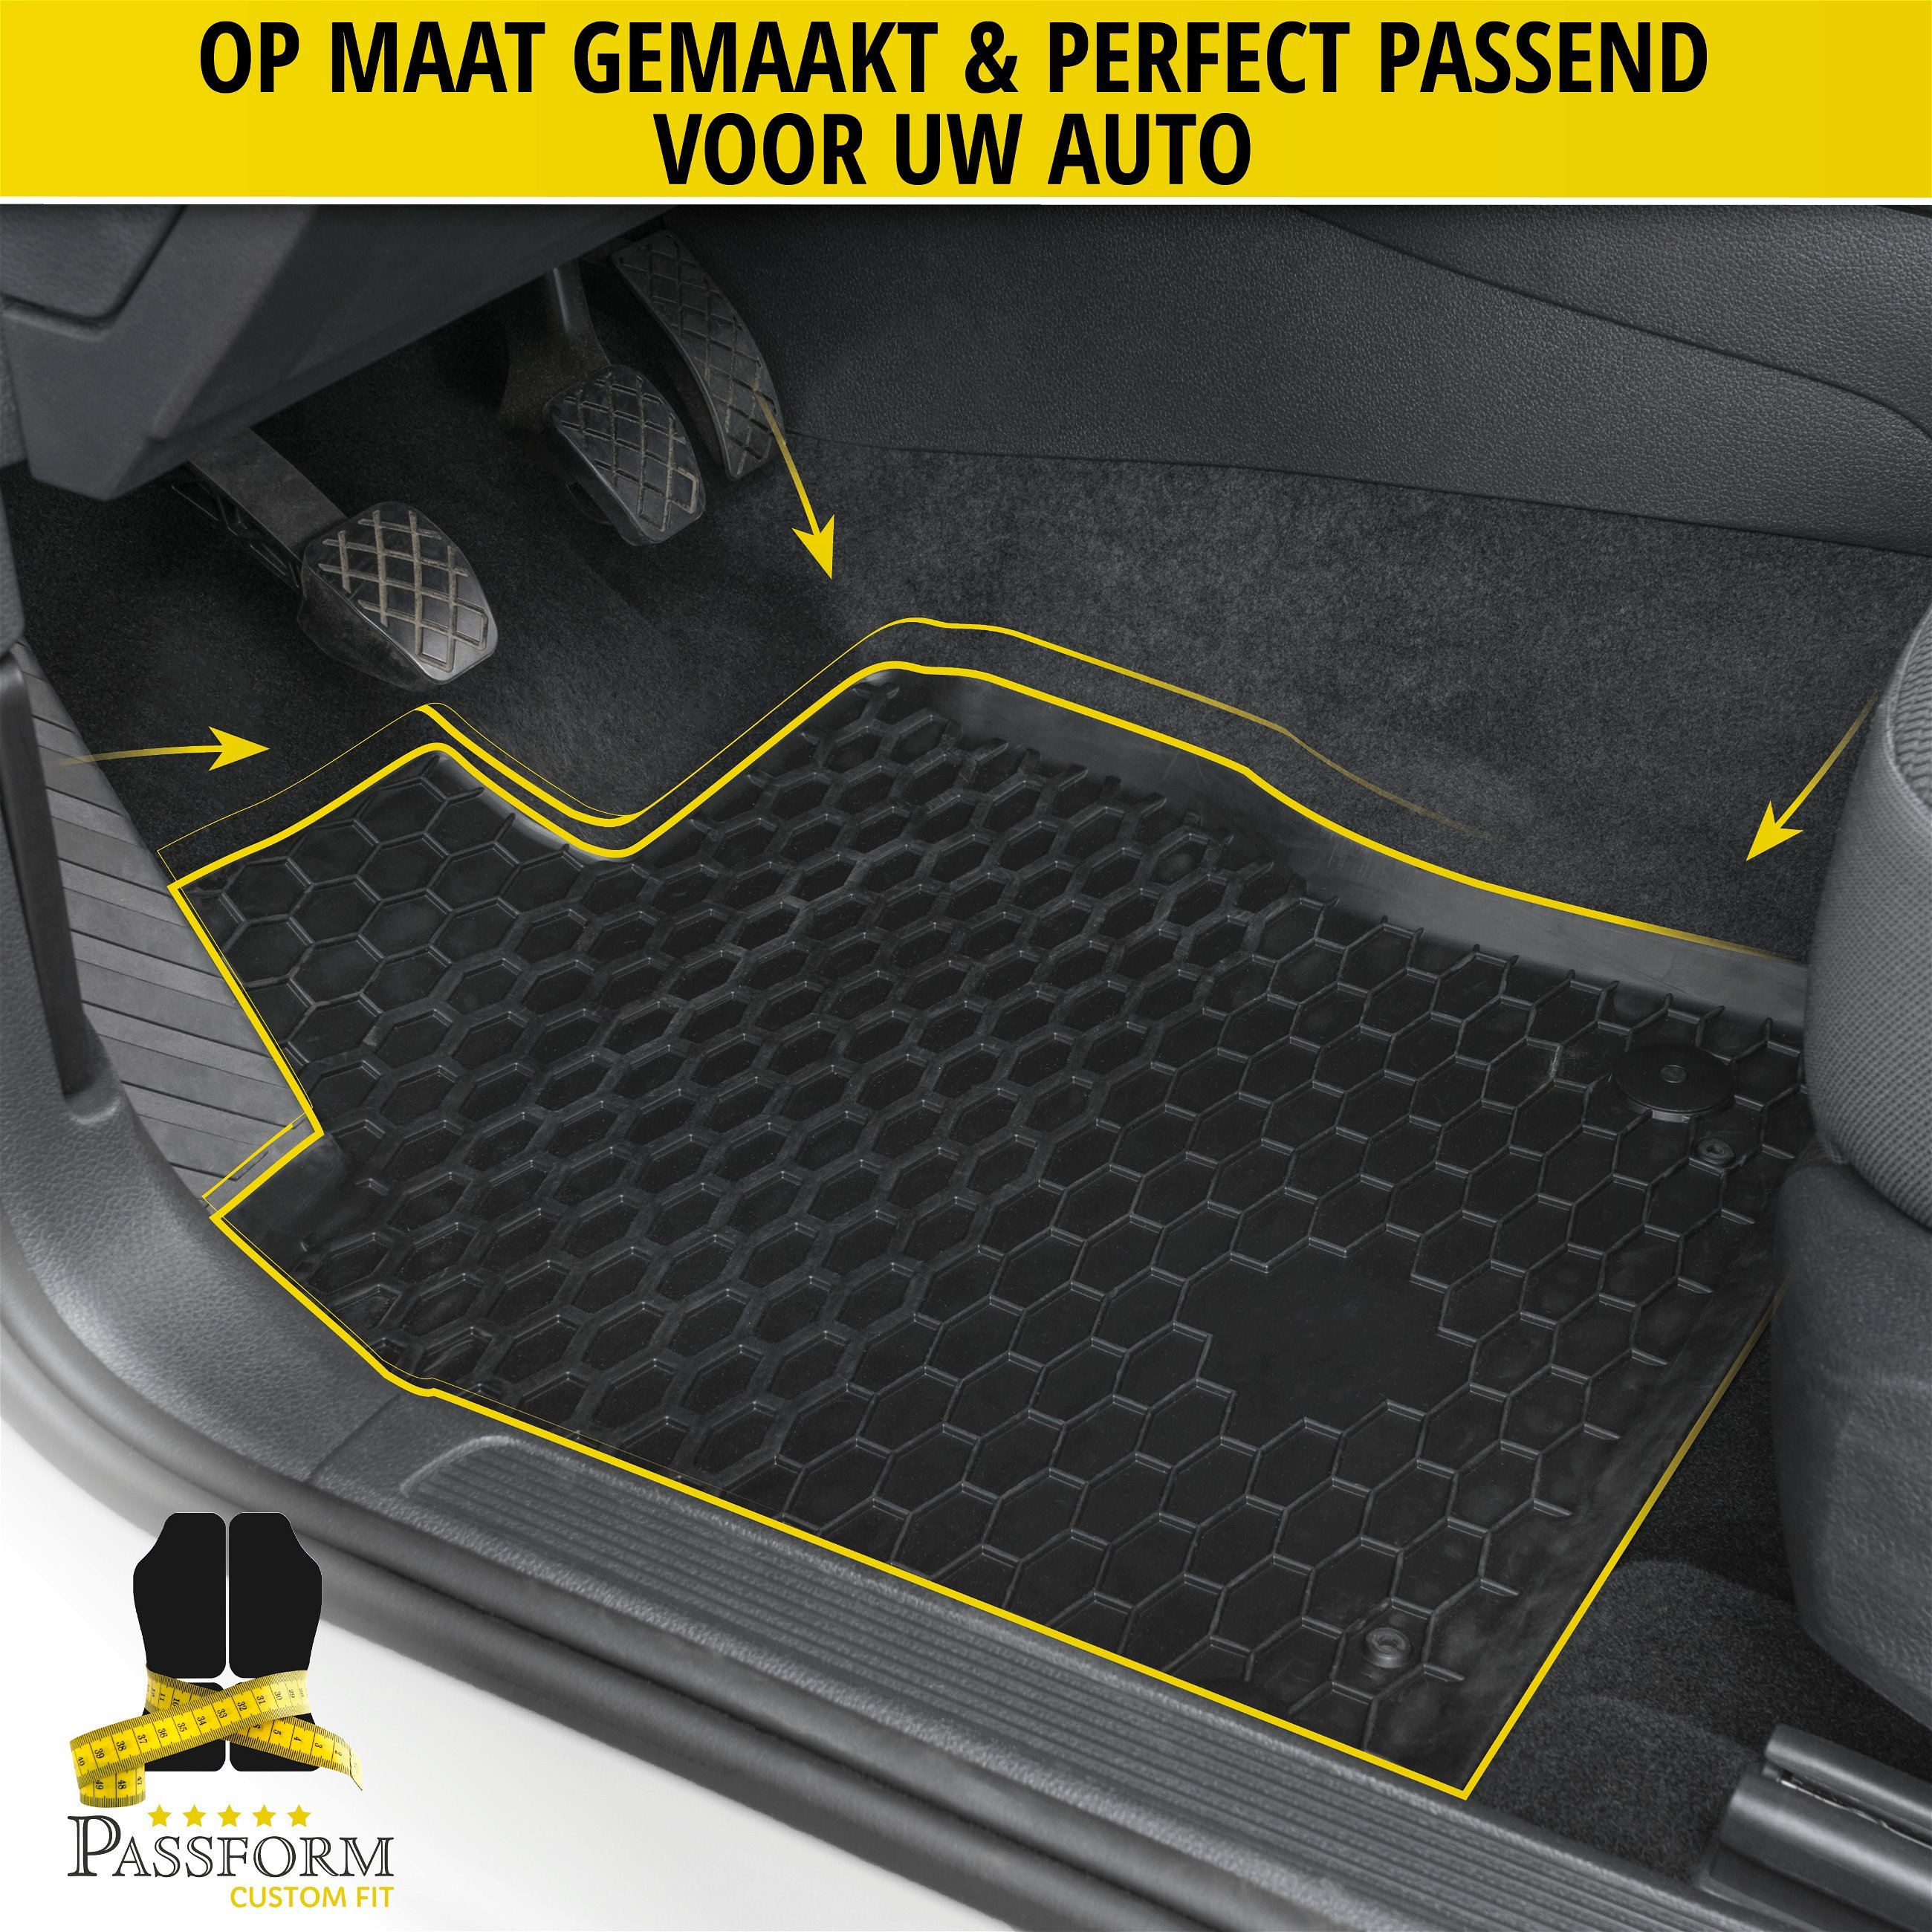 DirtGuard rubberen voetmatten geschikt voor Mercedes-Benz GLE Coupe 11/2019-Vandaag, ook geschikt voor Hybrid